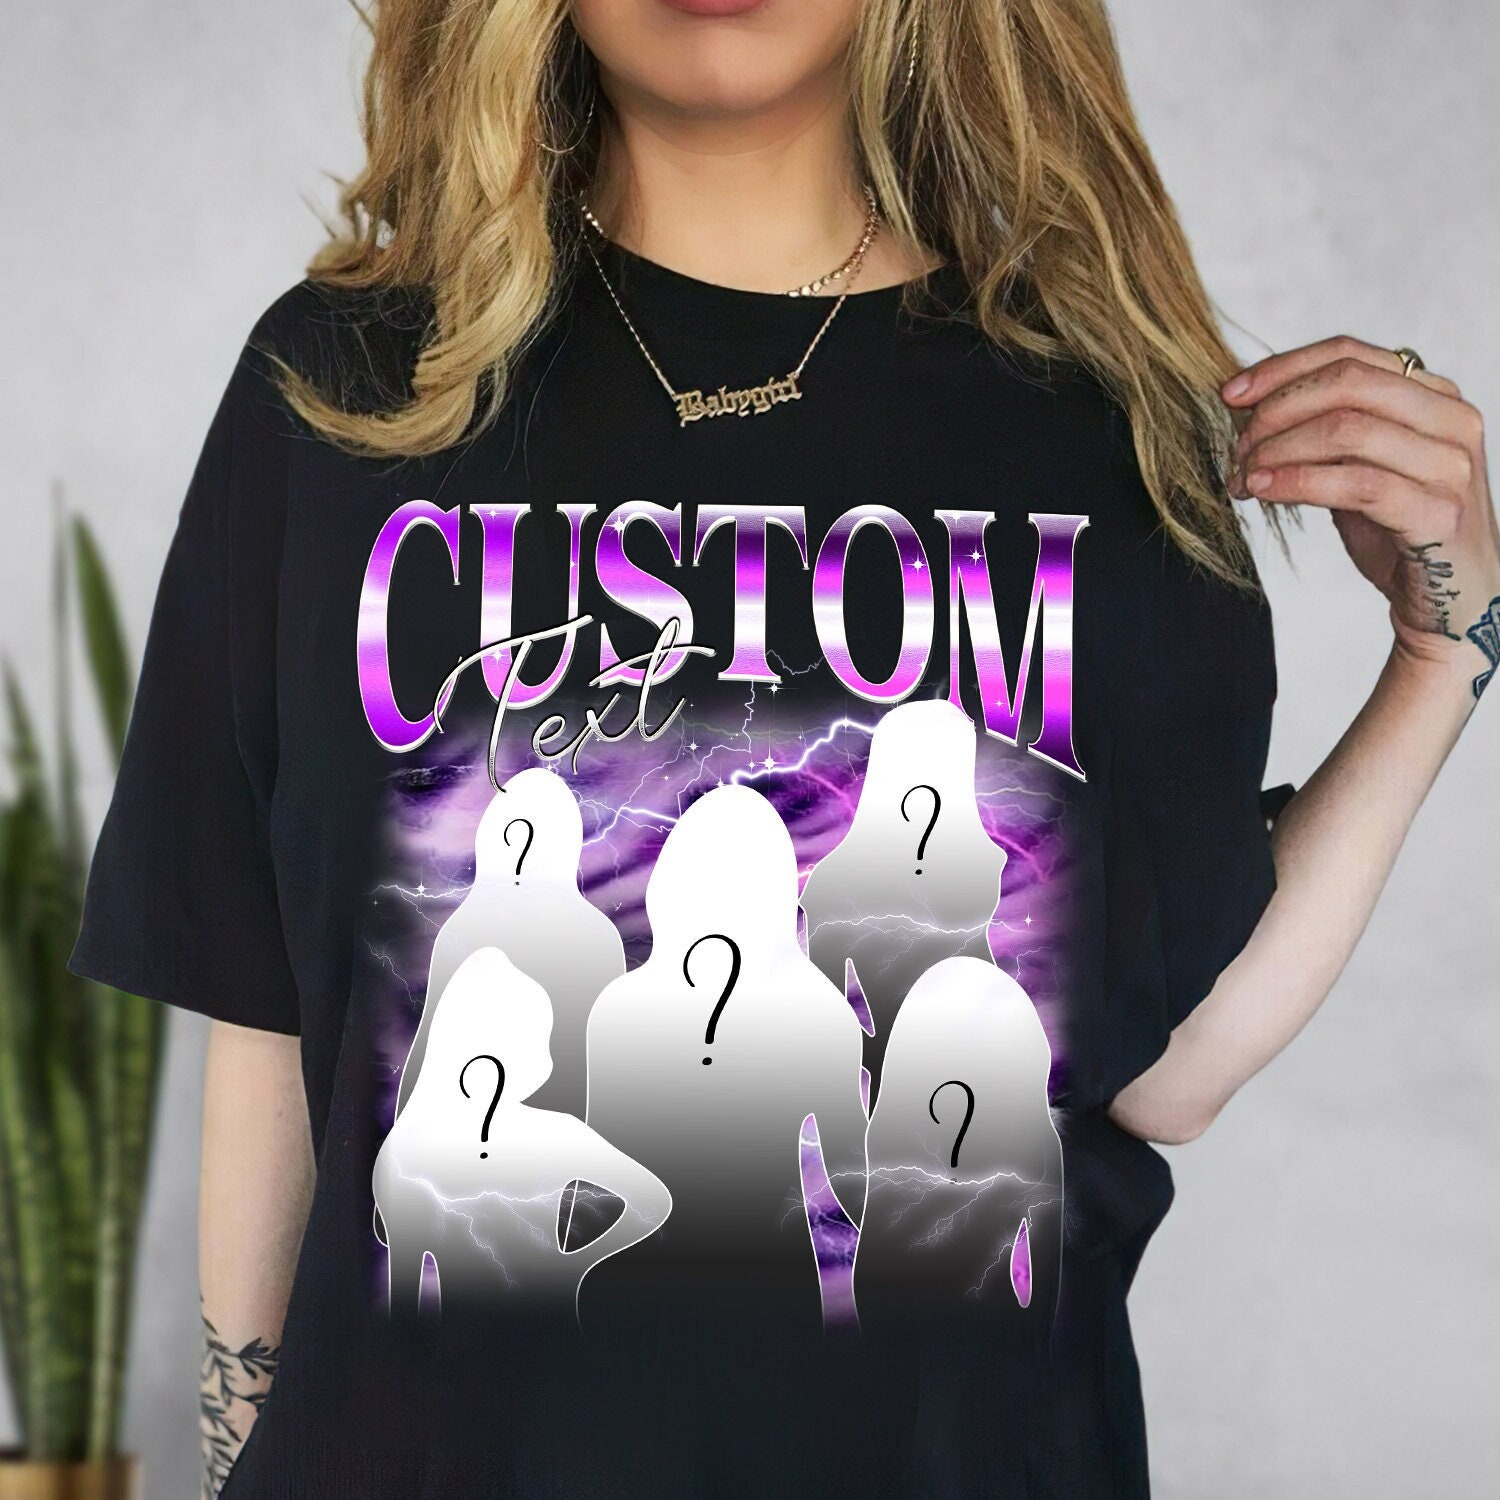 Custom Graphic Tee Custom Photo Shirt Custom Girlfriend 